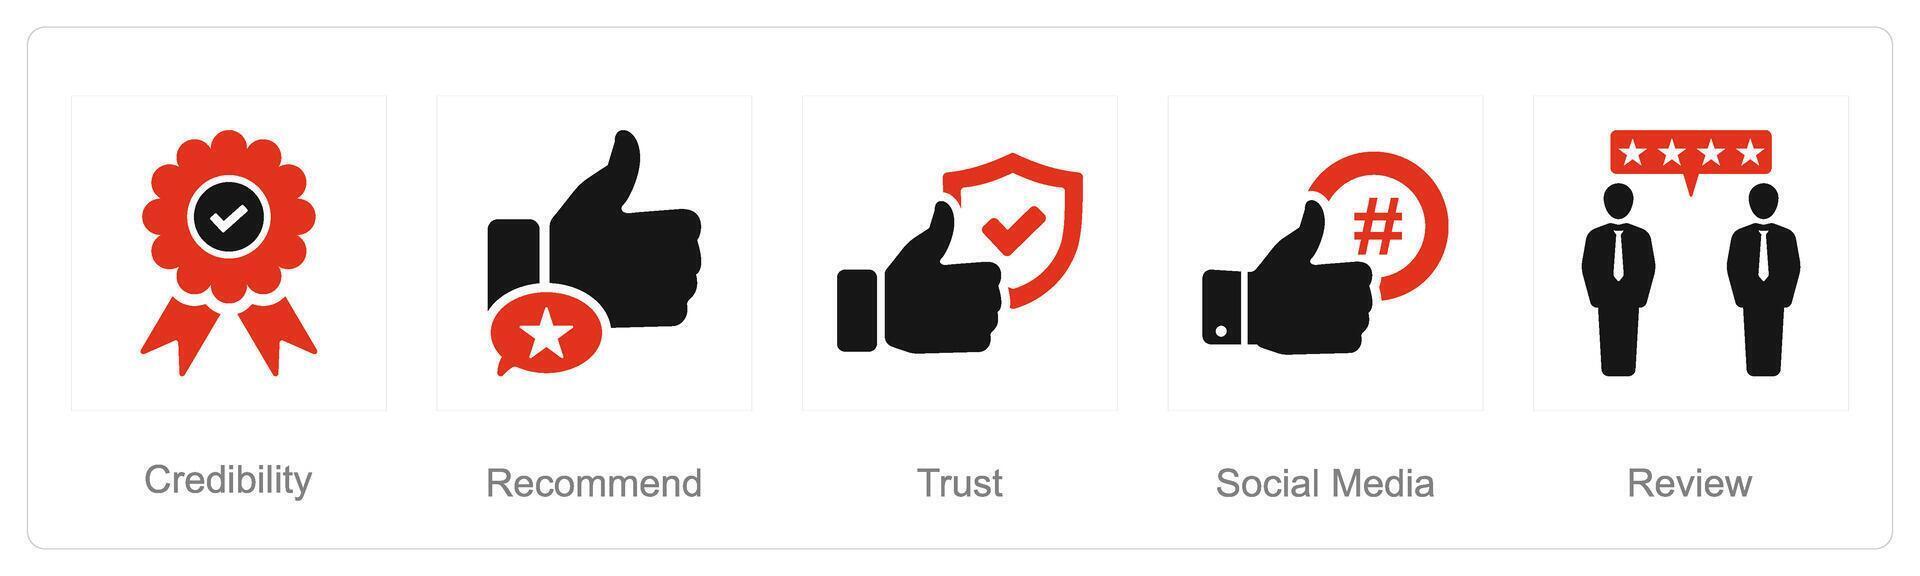 en uppsättning av 5 influencer ikoner som trovärdighet, rekommendation, förtroende vektor